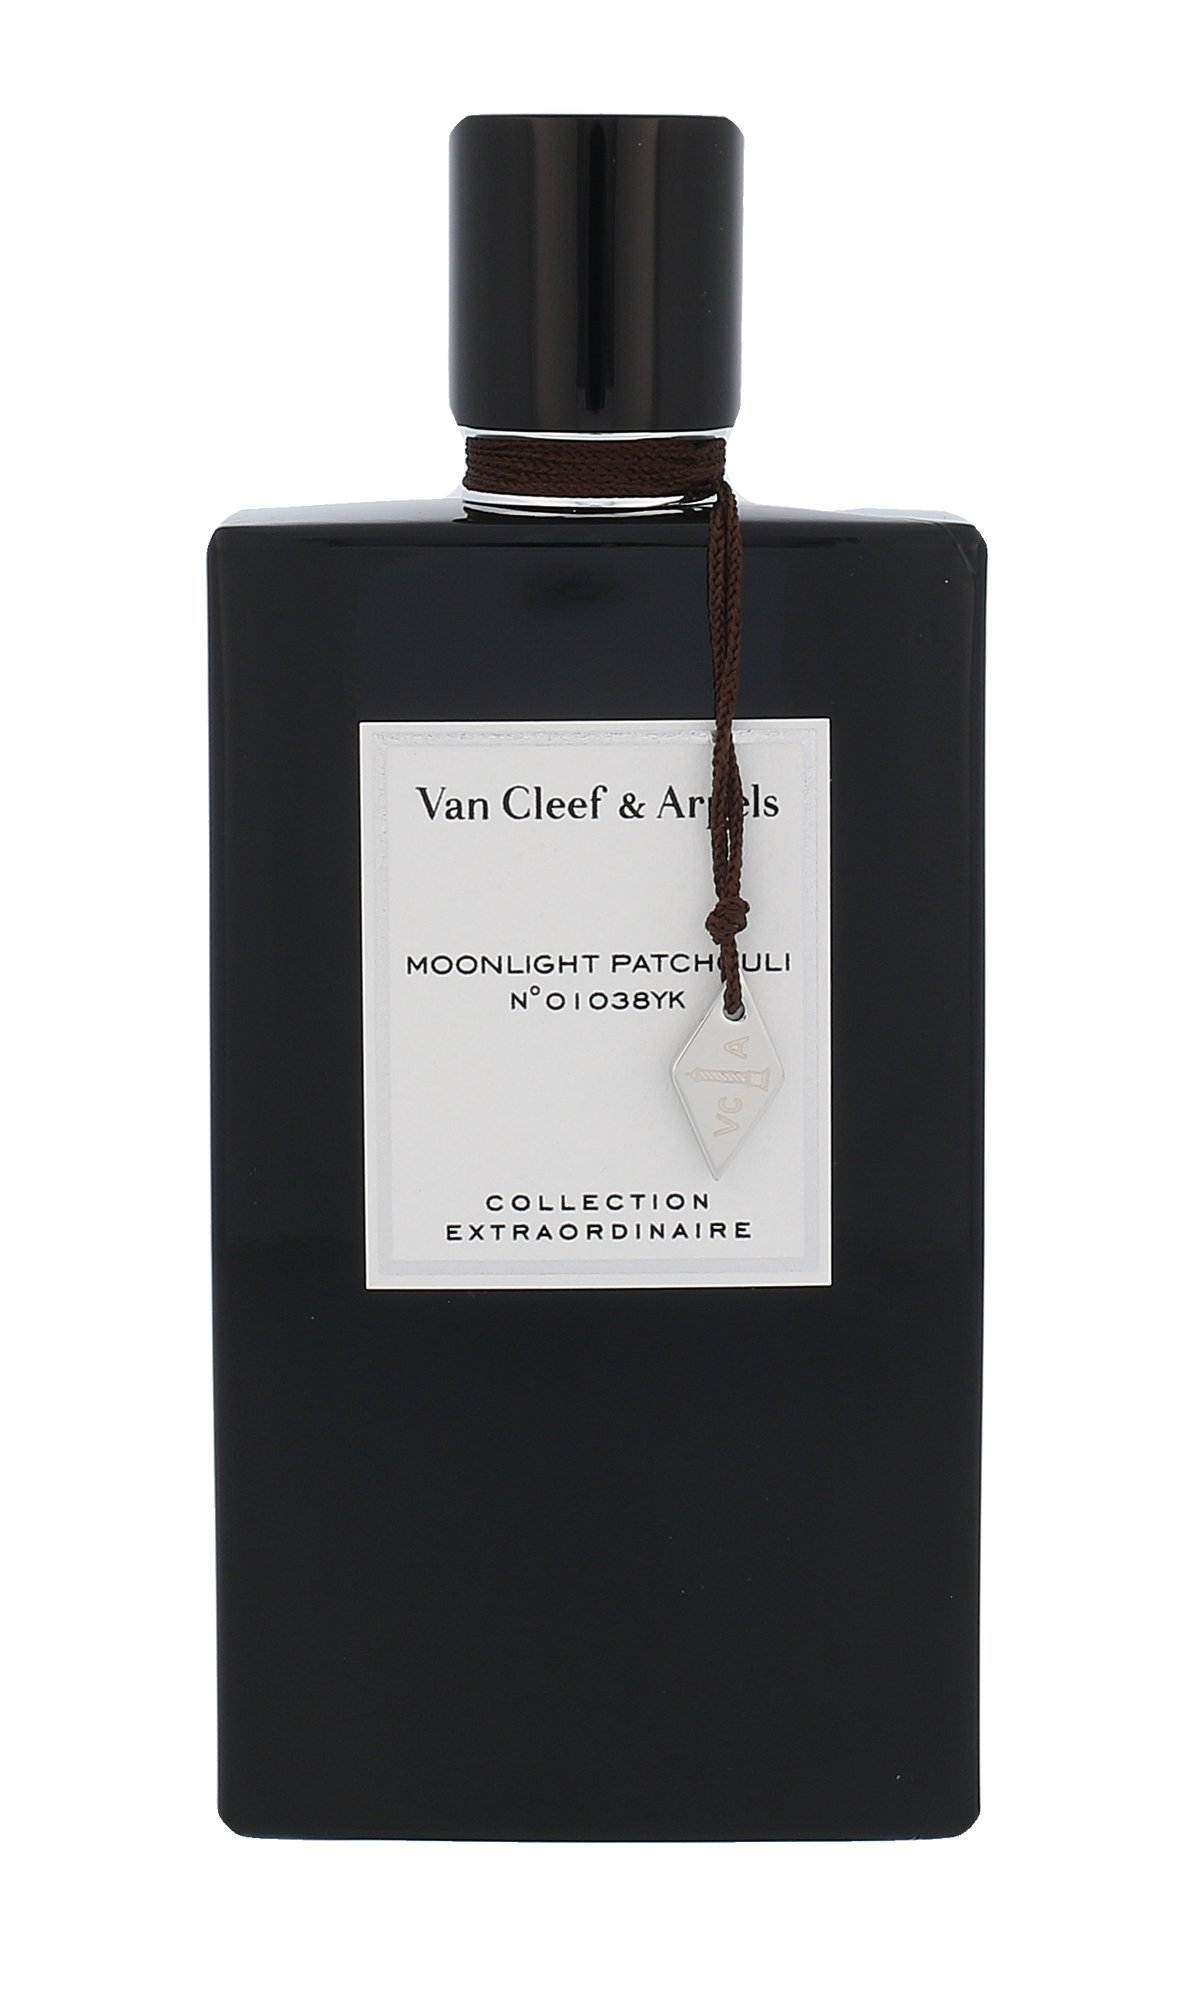 Van Cleef & Arpels Collection Extraordinaire Moonlight Patchouli, edp 75ml